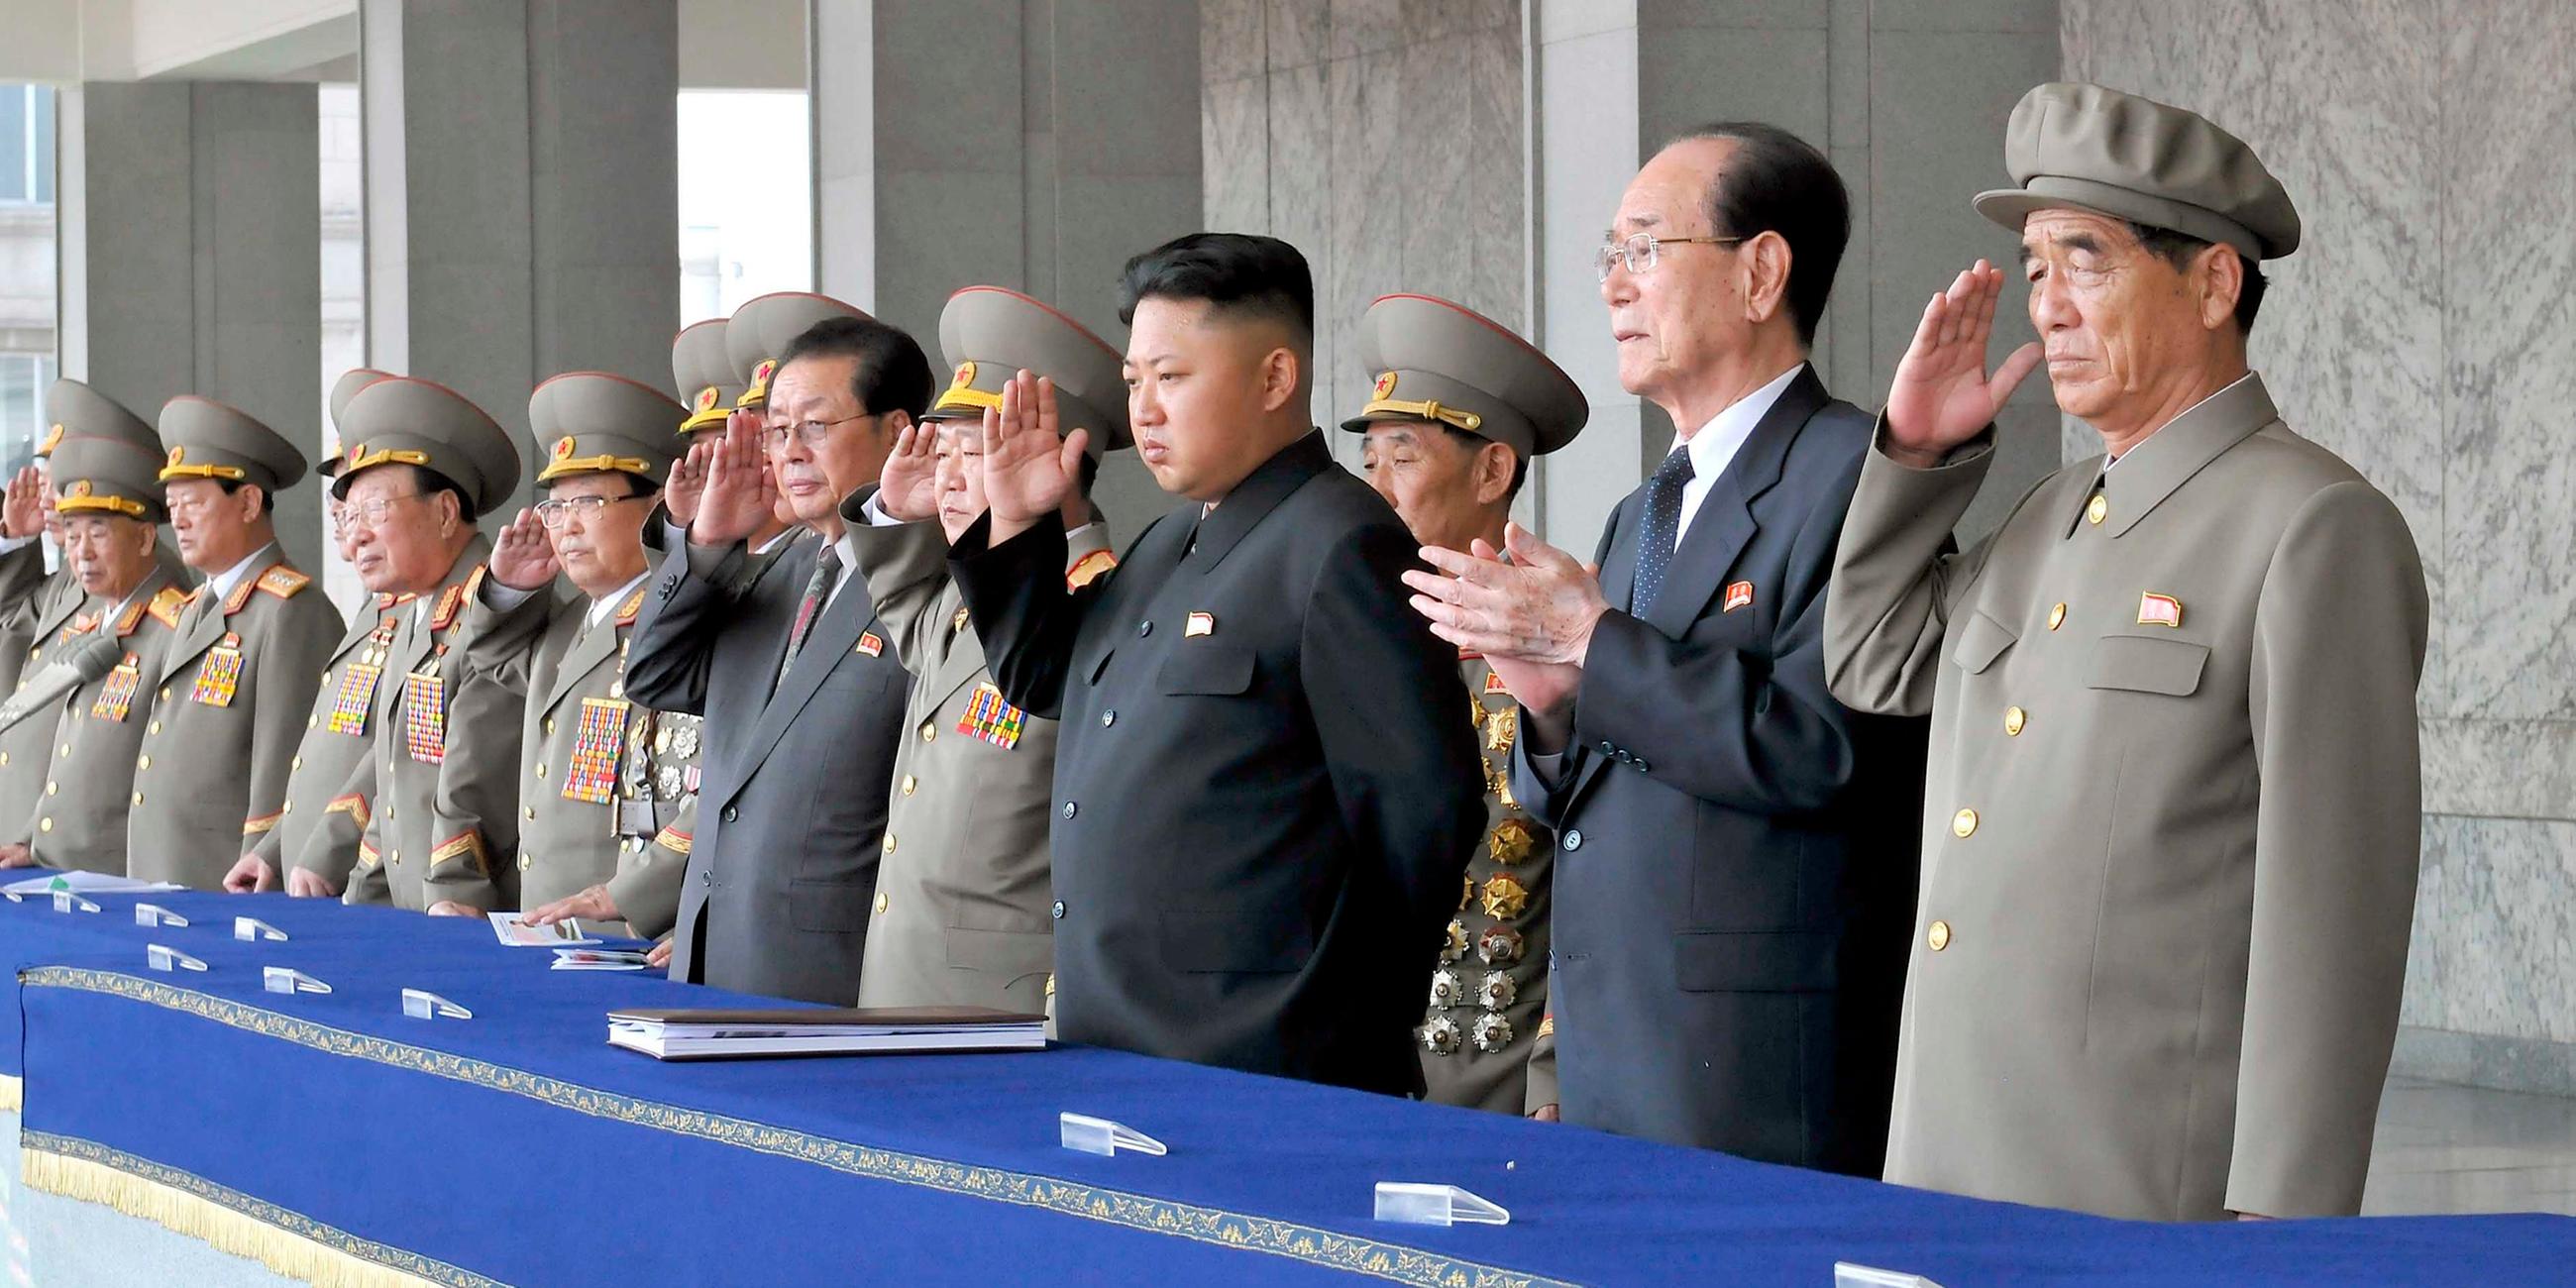 Kim Jong-un bei den Feierlichkeiten zum 65-jährigen Bestehen Nordkoreas - 2013